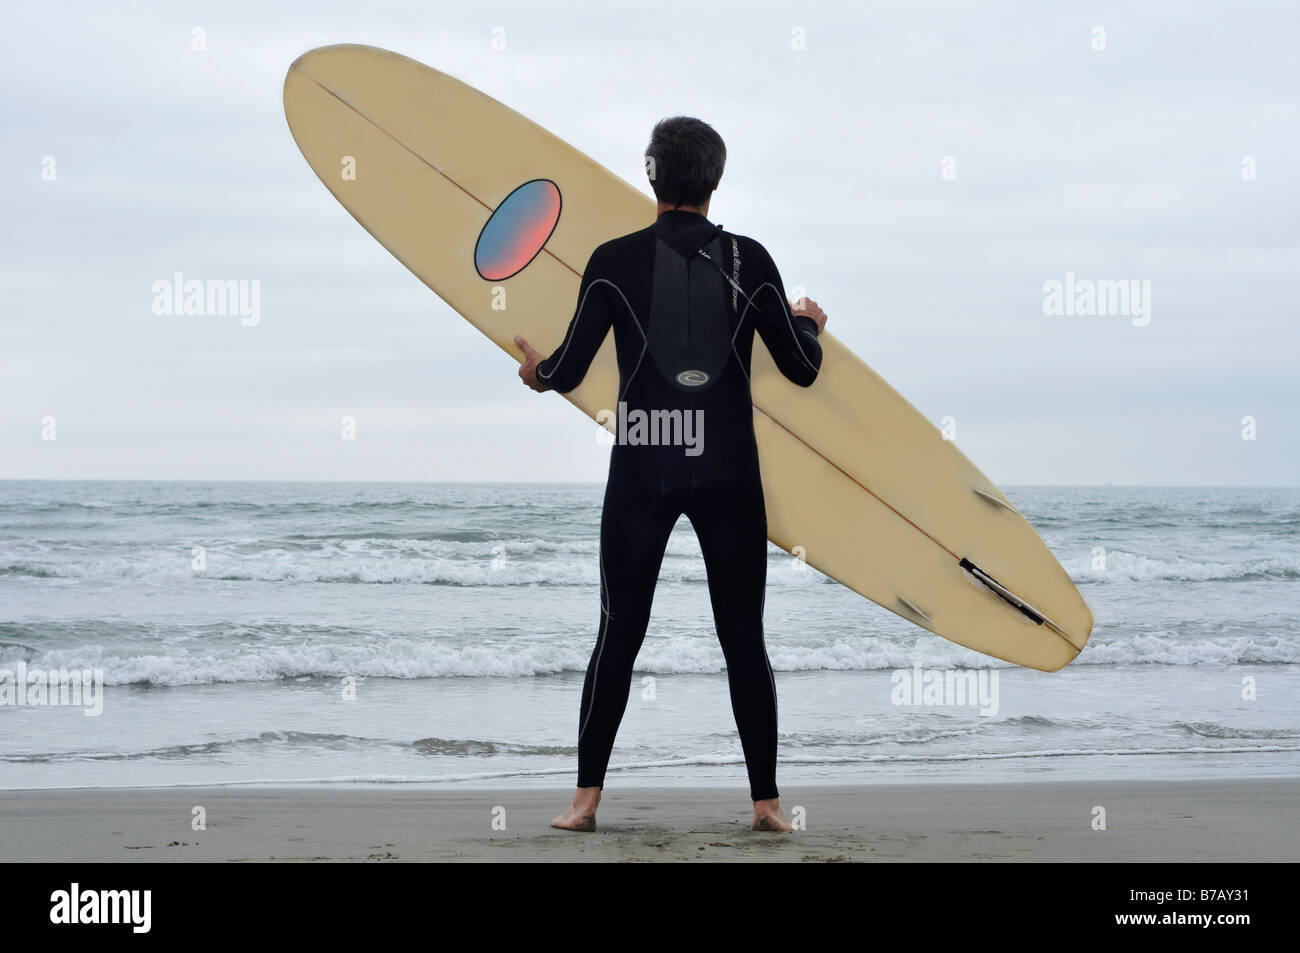 Man Holding Surfboard on Beach Stock Photo